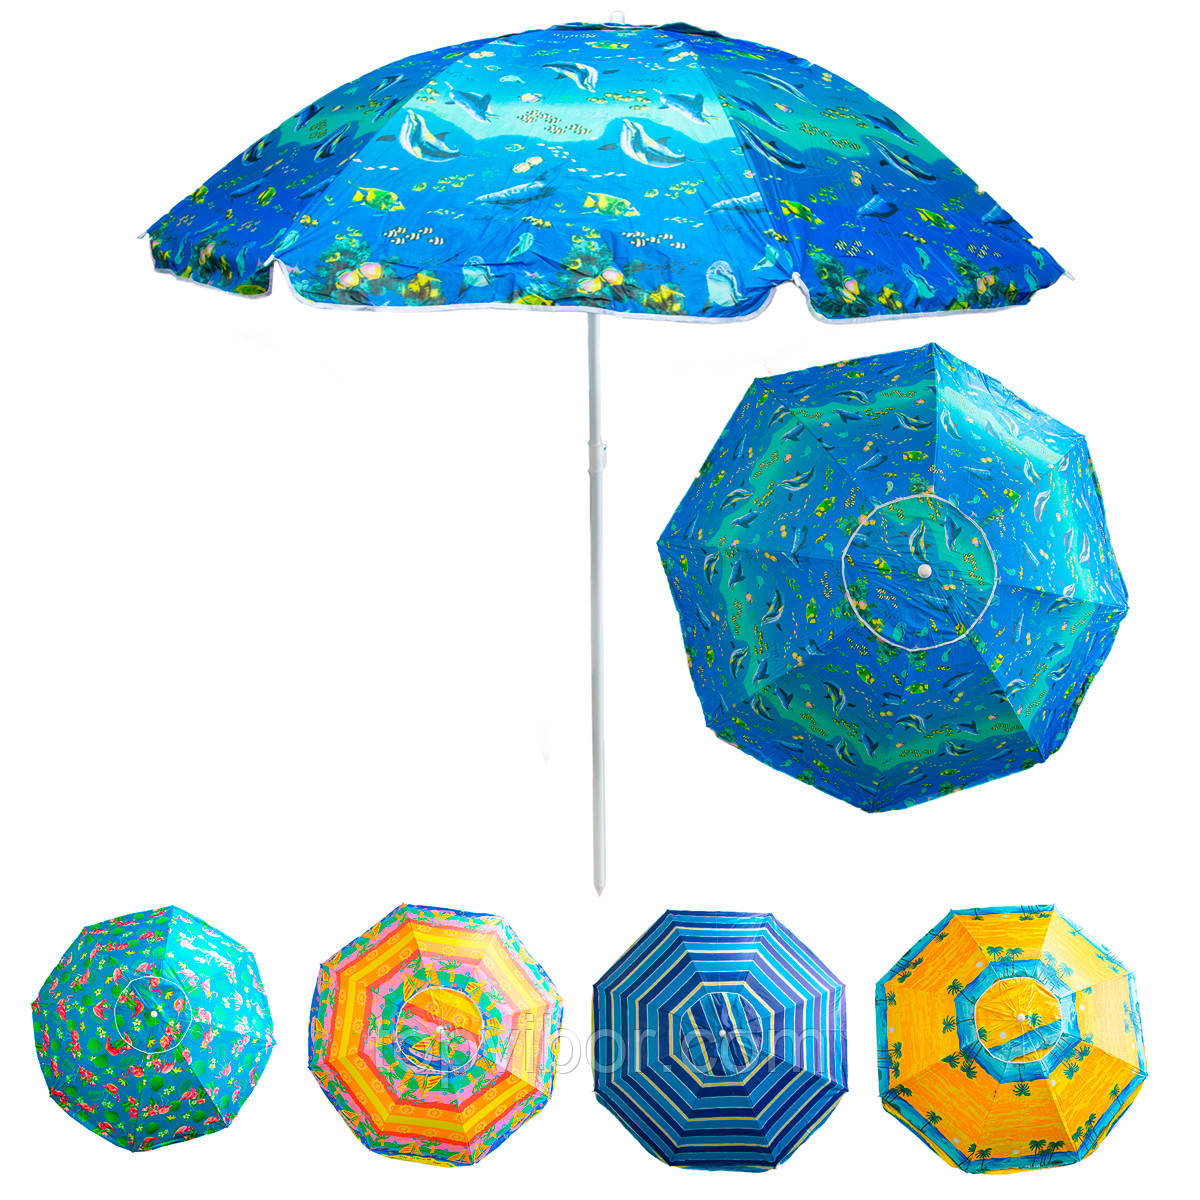 Парасолька пляжна антивітер "Stenson - синій Водний світ" 1,8м, парасоля пляжна посилена з срібним покриттям, фото 1